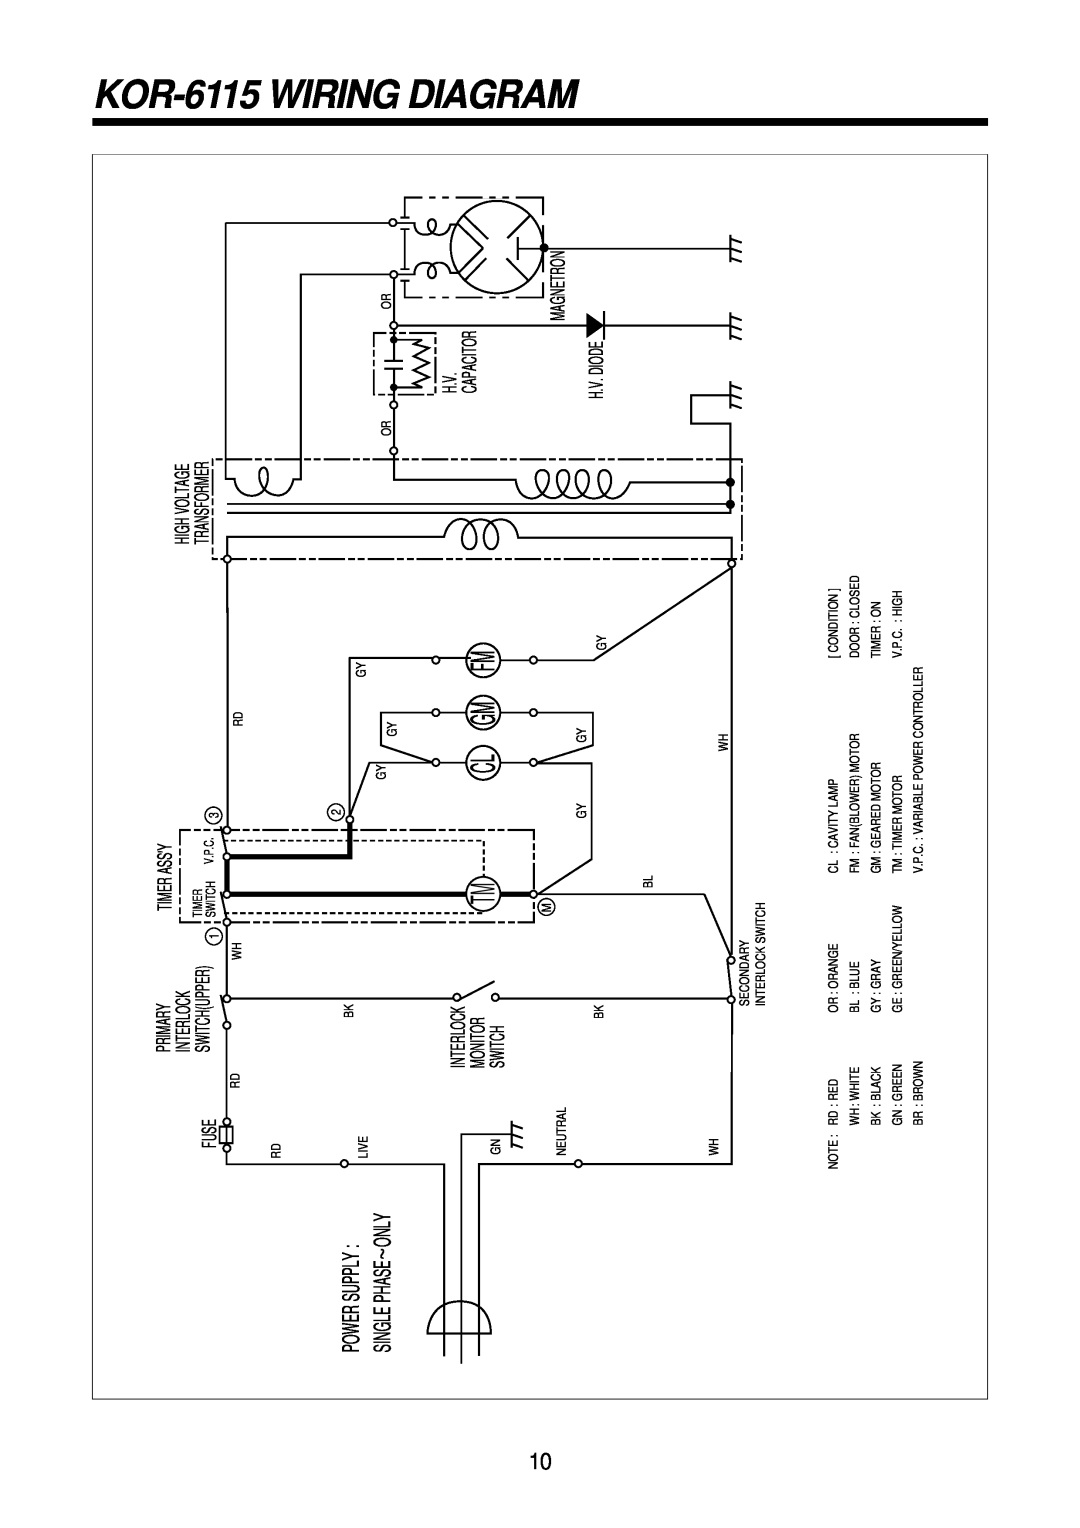 Daewoo KOR-61151, KOR-61155 service manual KOR-6115 WIRING DIAGRAM, Power Supply, Single Phase~Only 